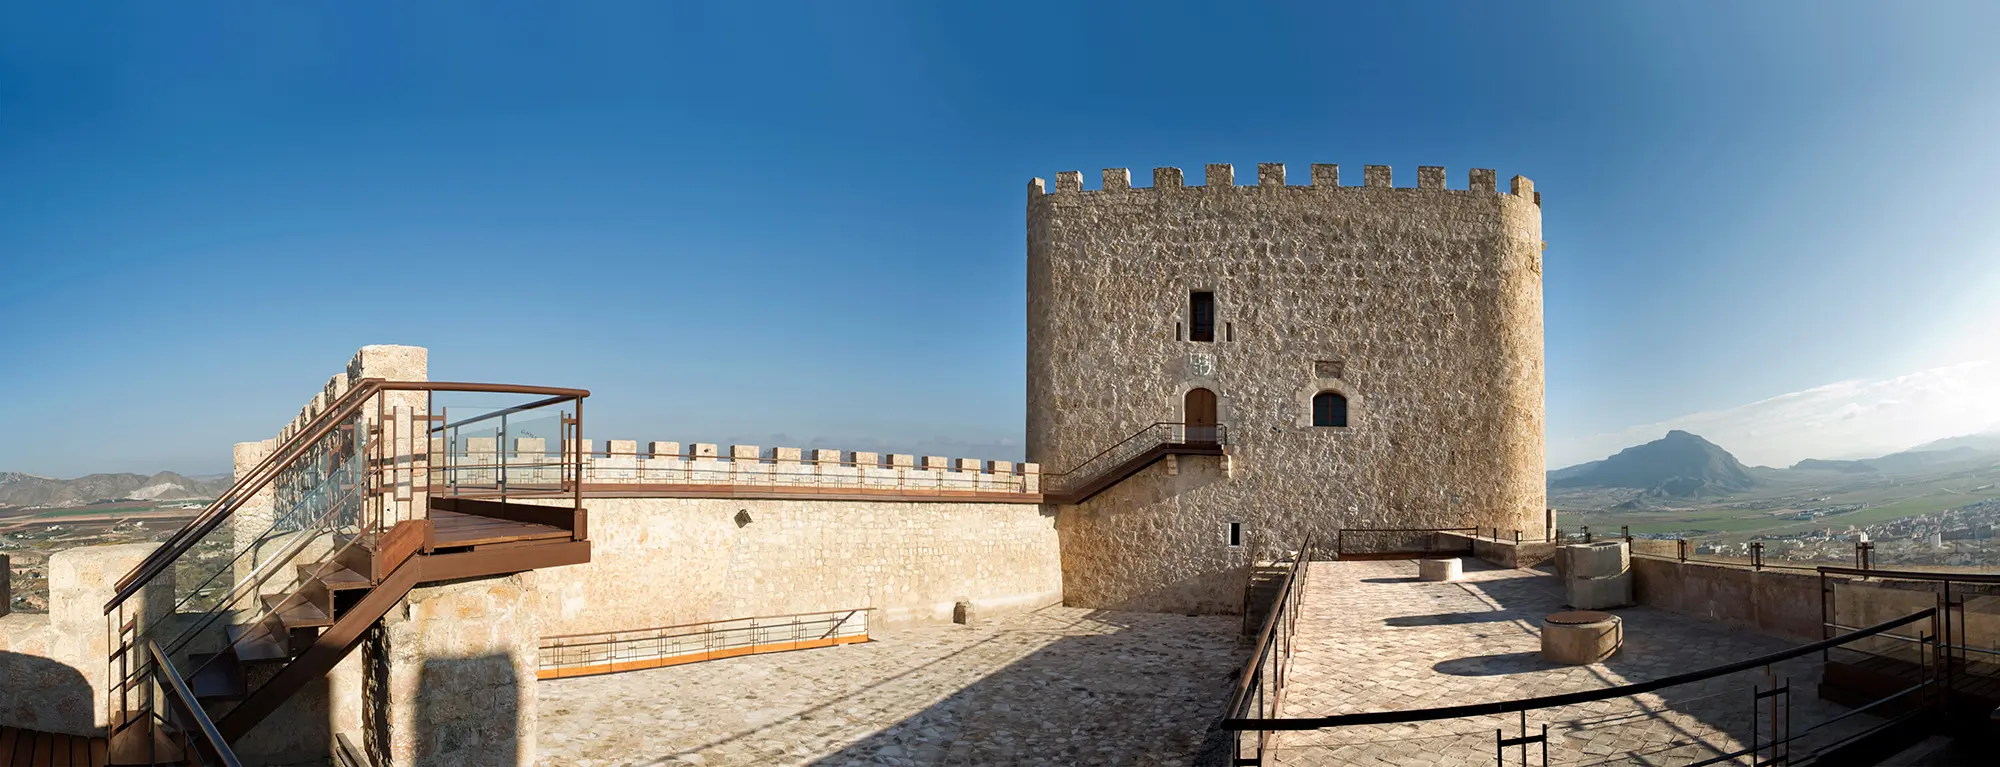 Patio de armas y torre del homenaje del Castillo de Jumilla